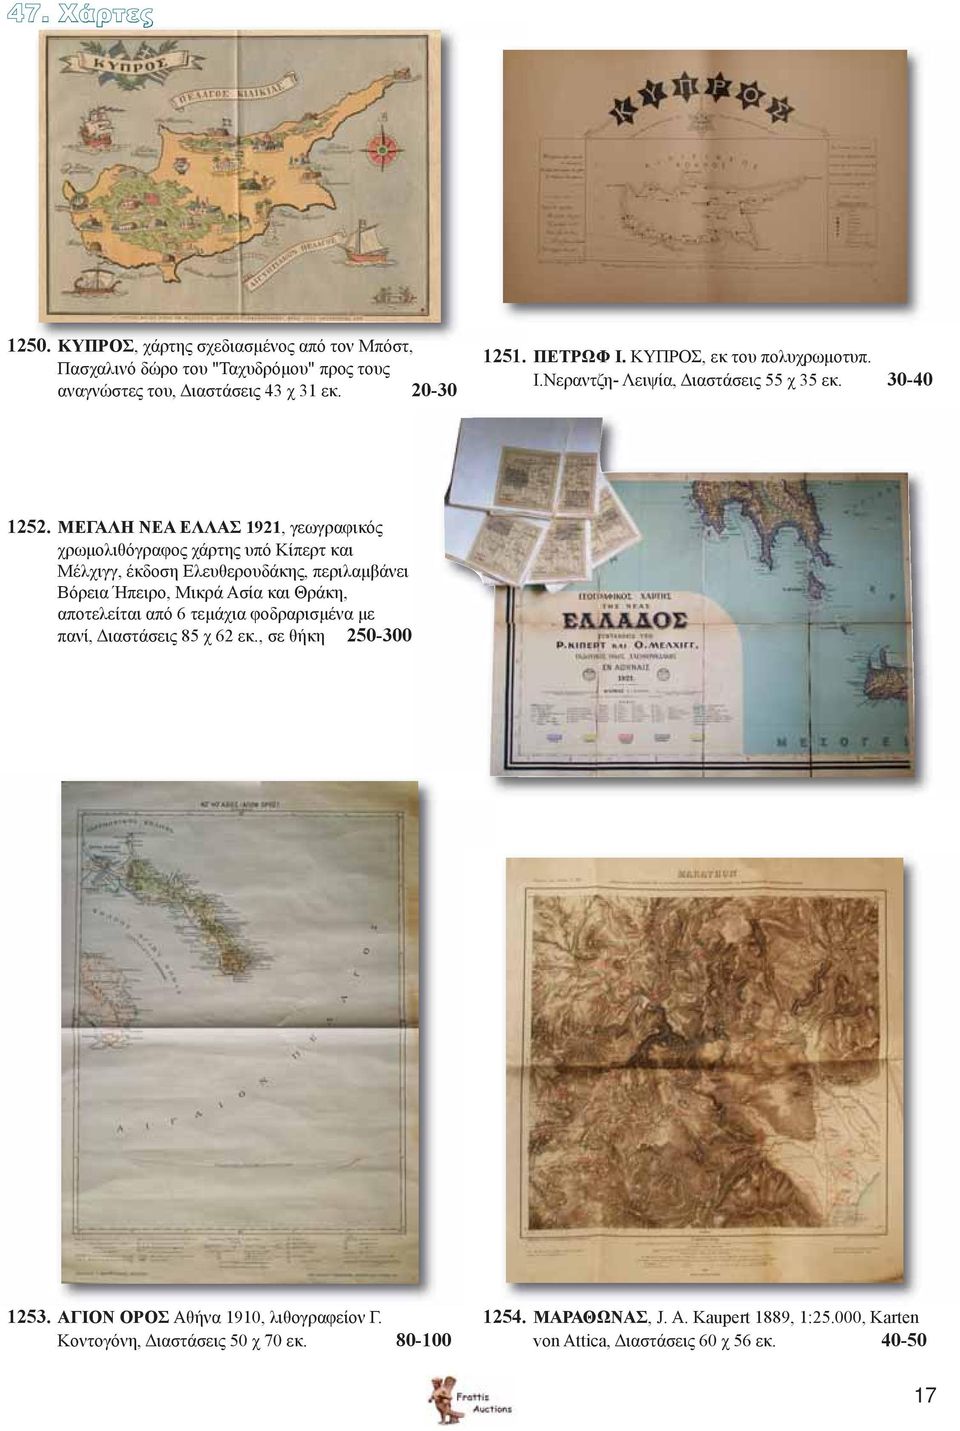 ΜΕΓΑΛΗ ΝΕΑ ΕΛΛΑΣ 1921, γεωγραφικός χρωμολιθόγραφος χάρτης υπό Κίπερτ και Μέλχιγγ, έκδοση Ελευθερουδάκης, περιλαμβάνει Βόρεια Ήπειρο, Μικρά Ασία και Θράκη, αποτελείται